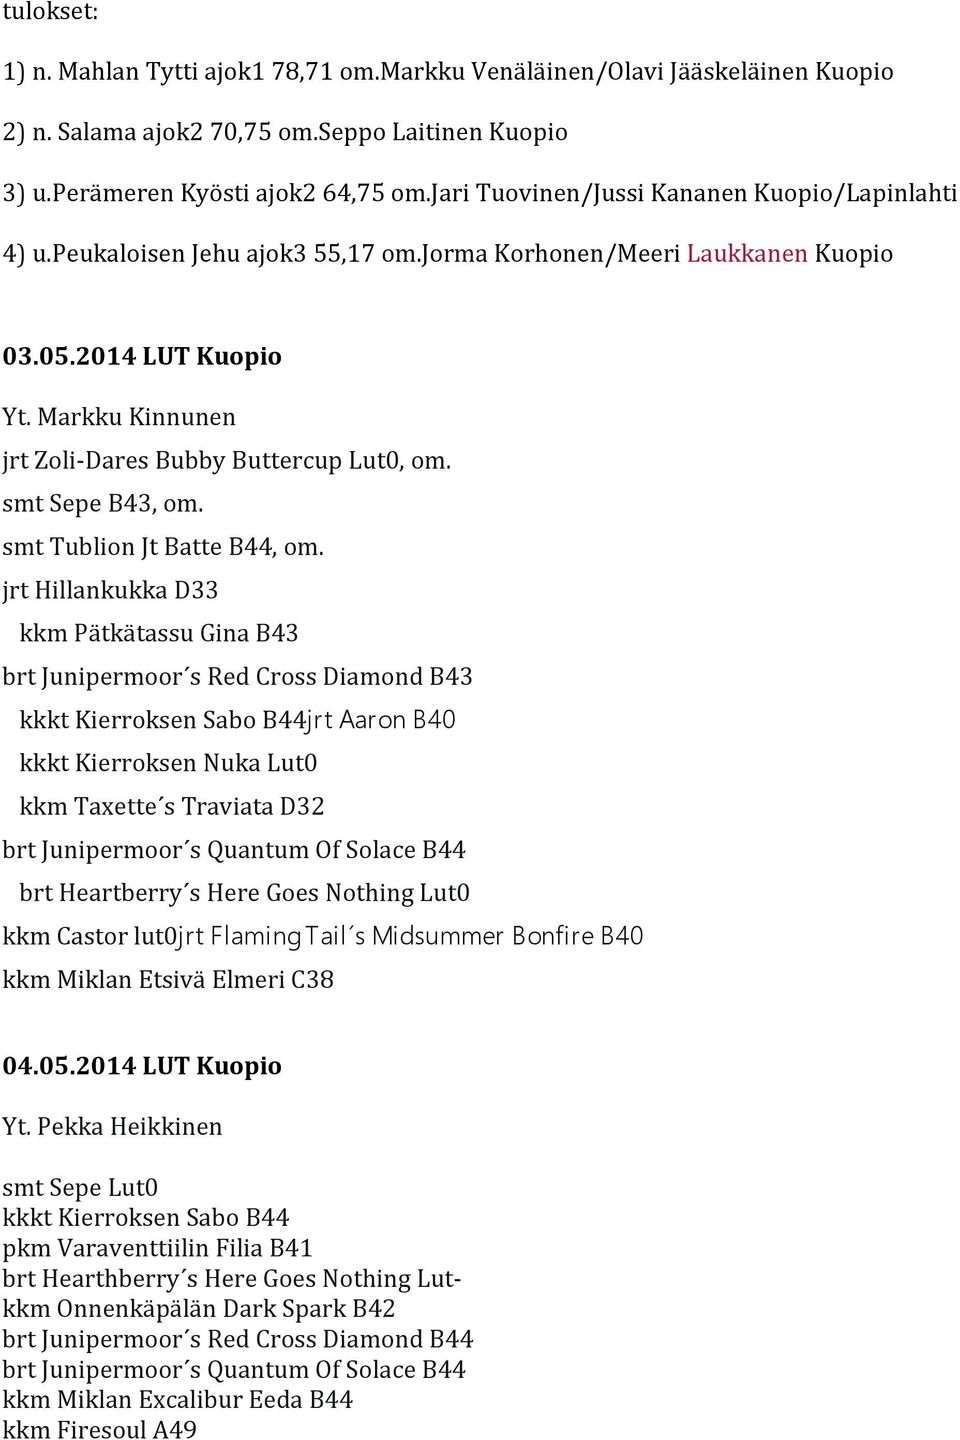 Markku Kinnunen jrt Zoli-Dares Bubby Buttercup Lut0, om. smt Sepe B43, om. smt Tublion Jt Batte B44, om.